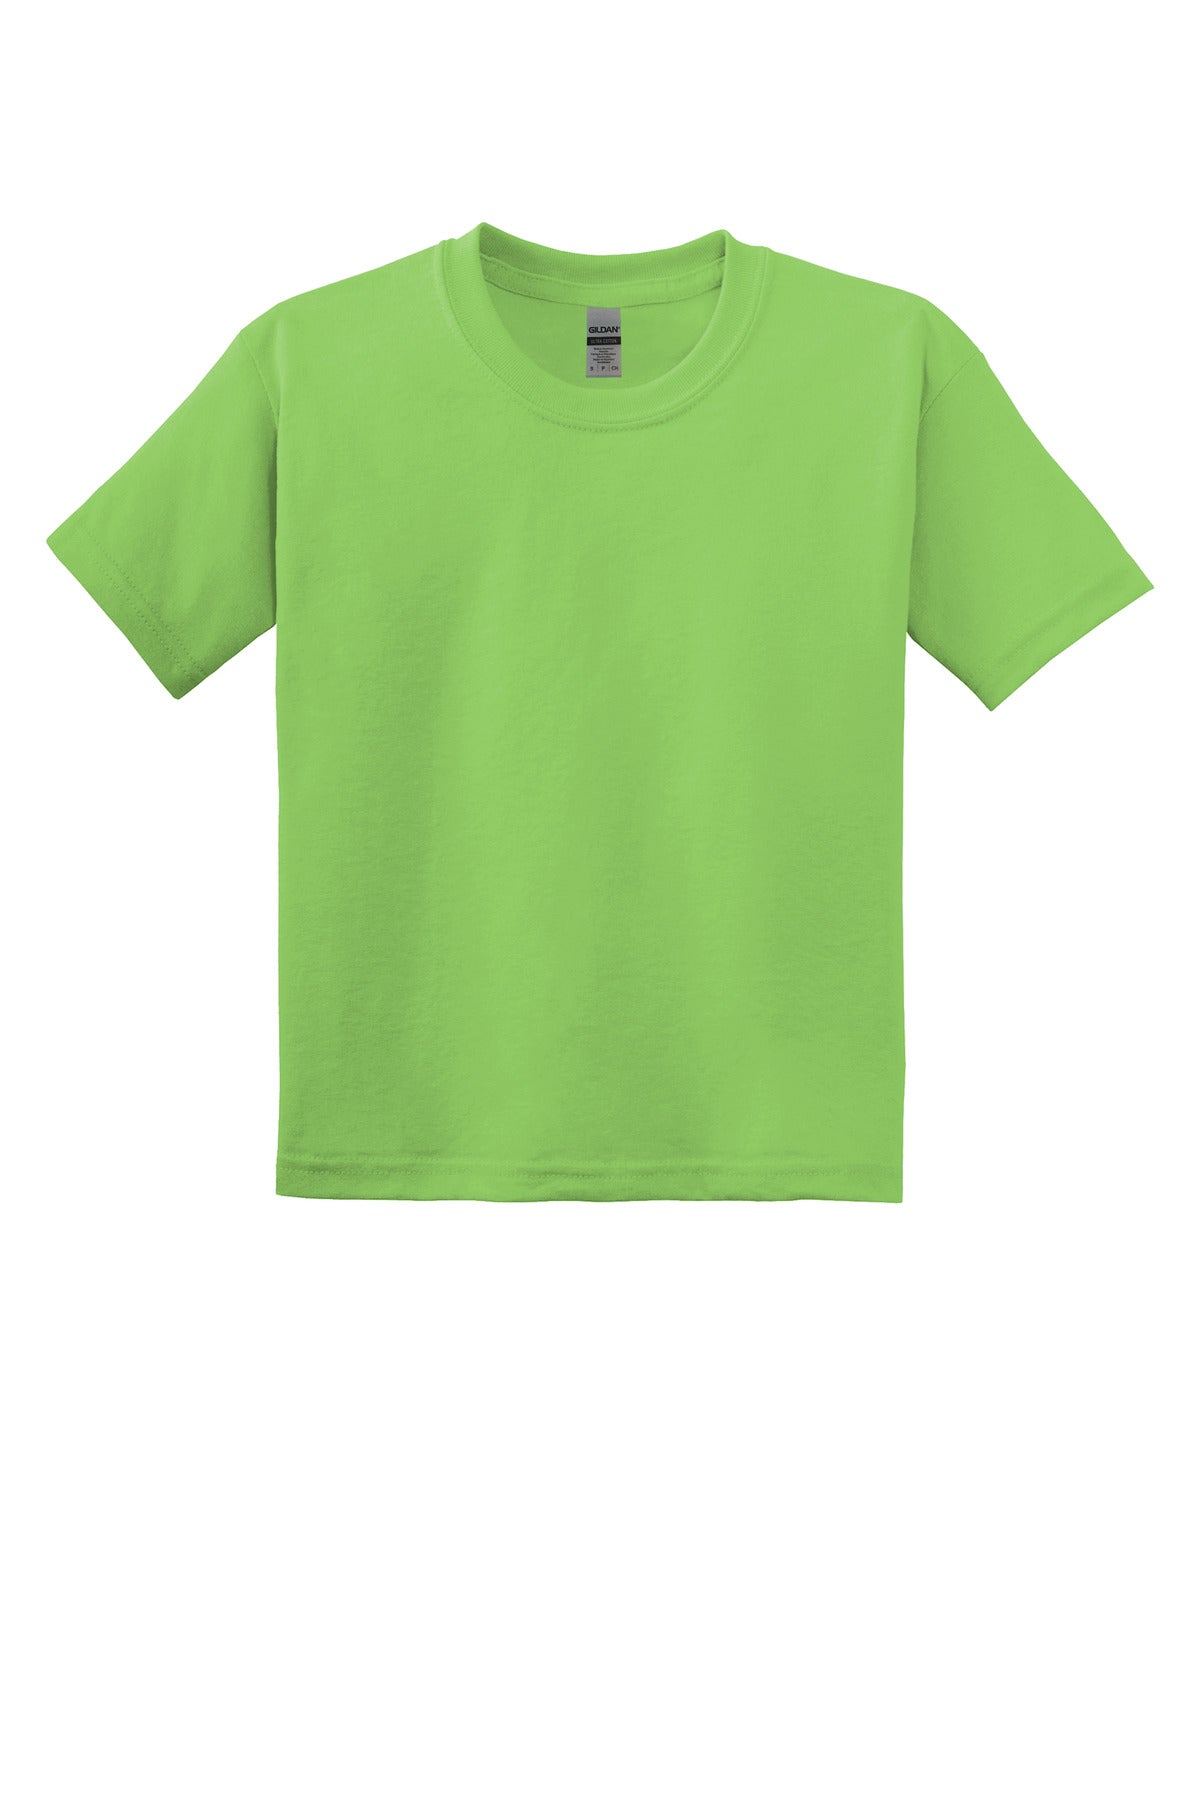 T-Shirts Lime Gildan